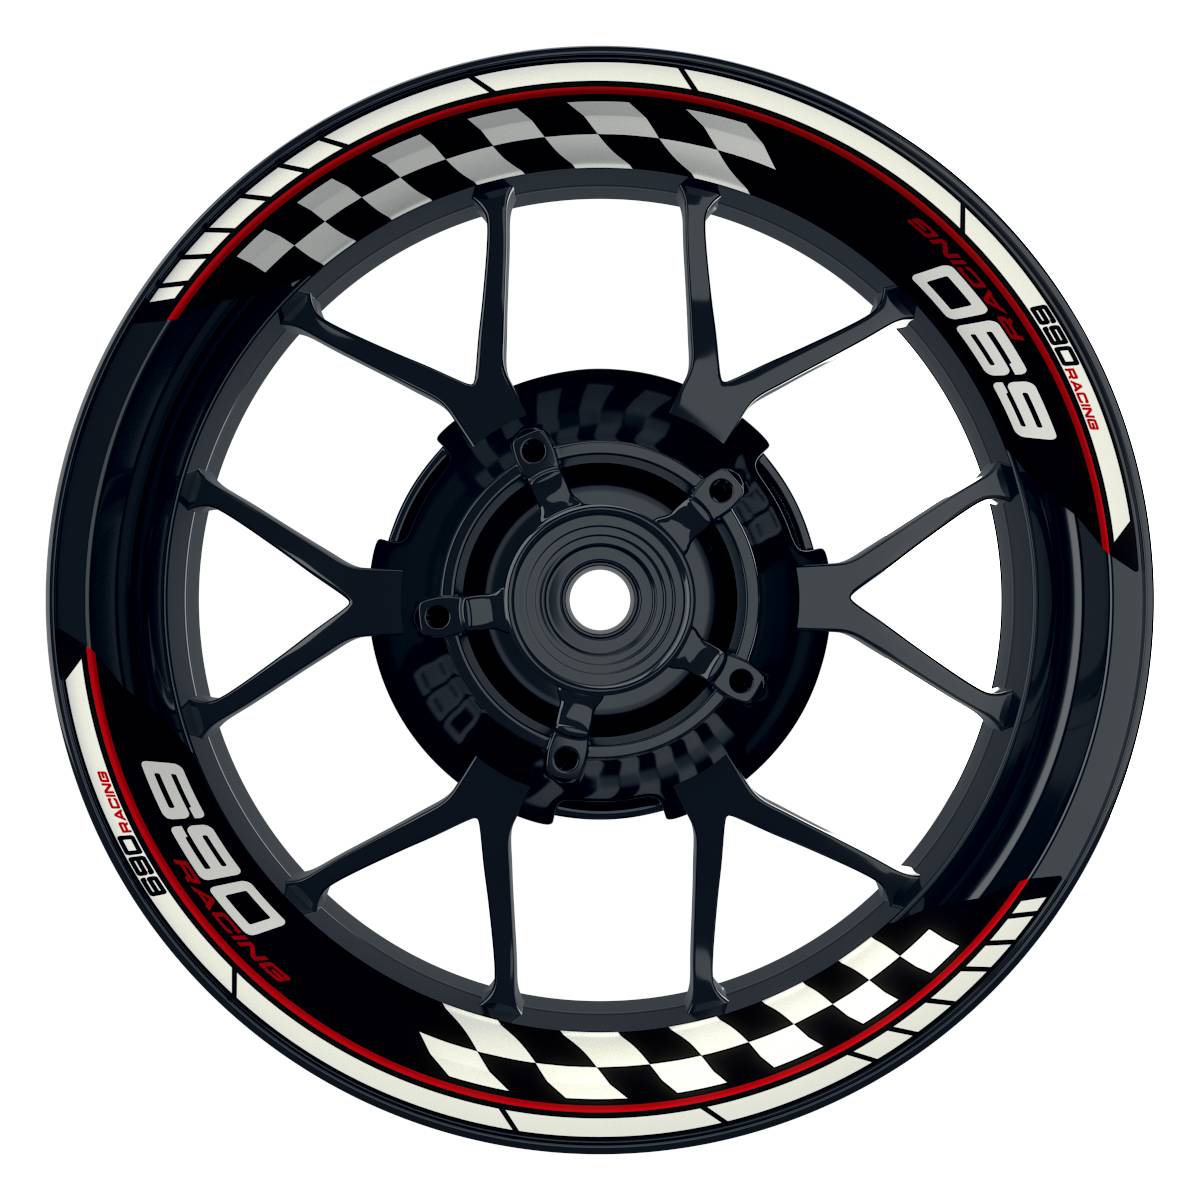 KTM Racing 690 Grid schwarz rot Frontansicht